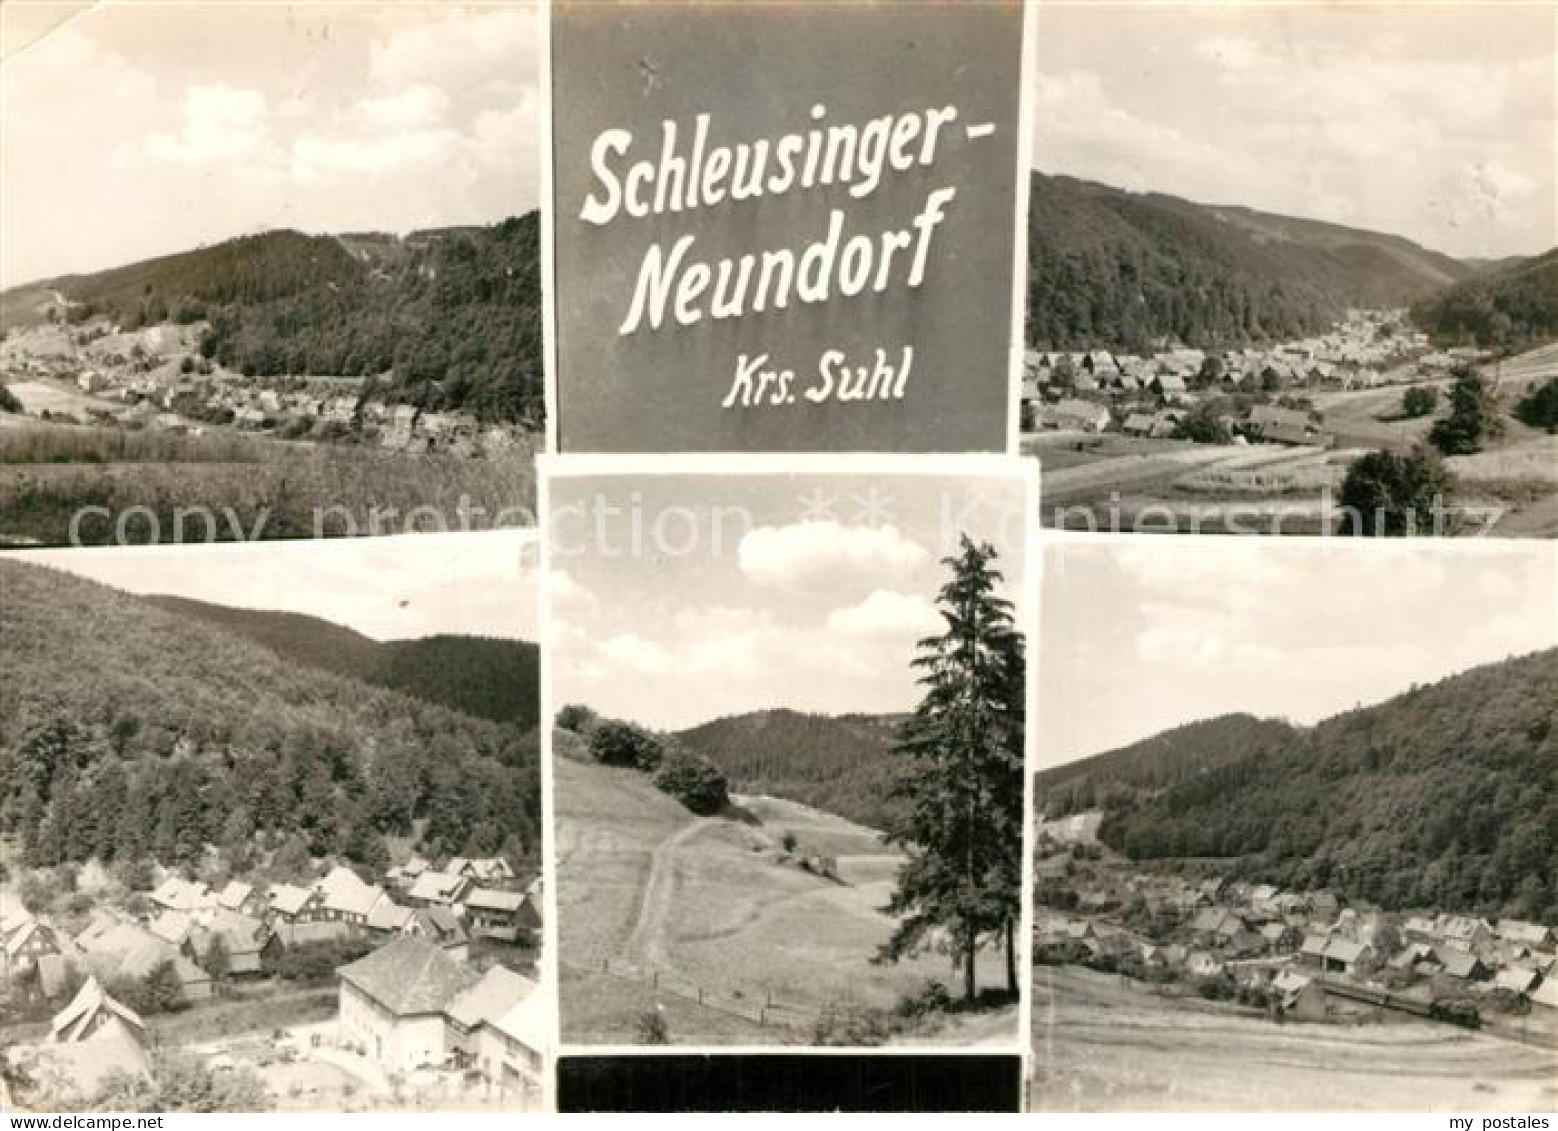 43372286 Neundorf Schleusingen Gesamtansicht Landschaftspanorama  - Schleusingen